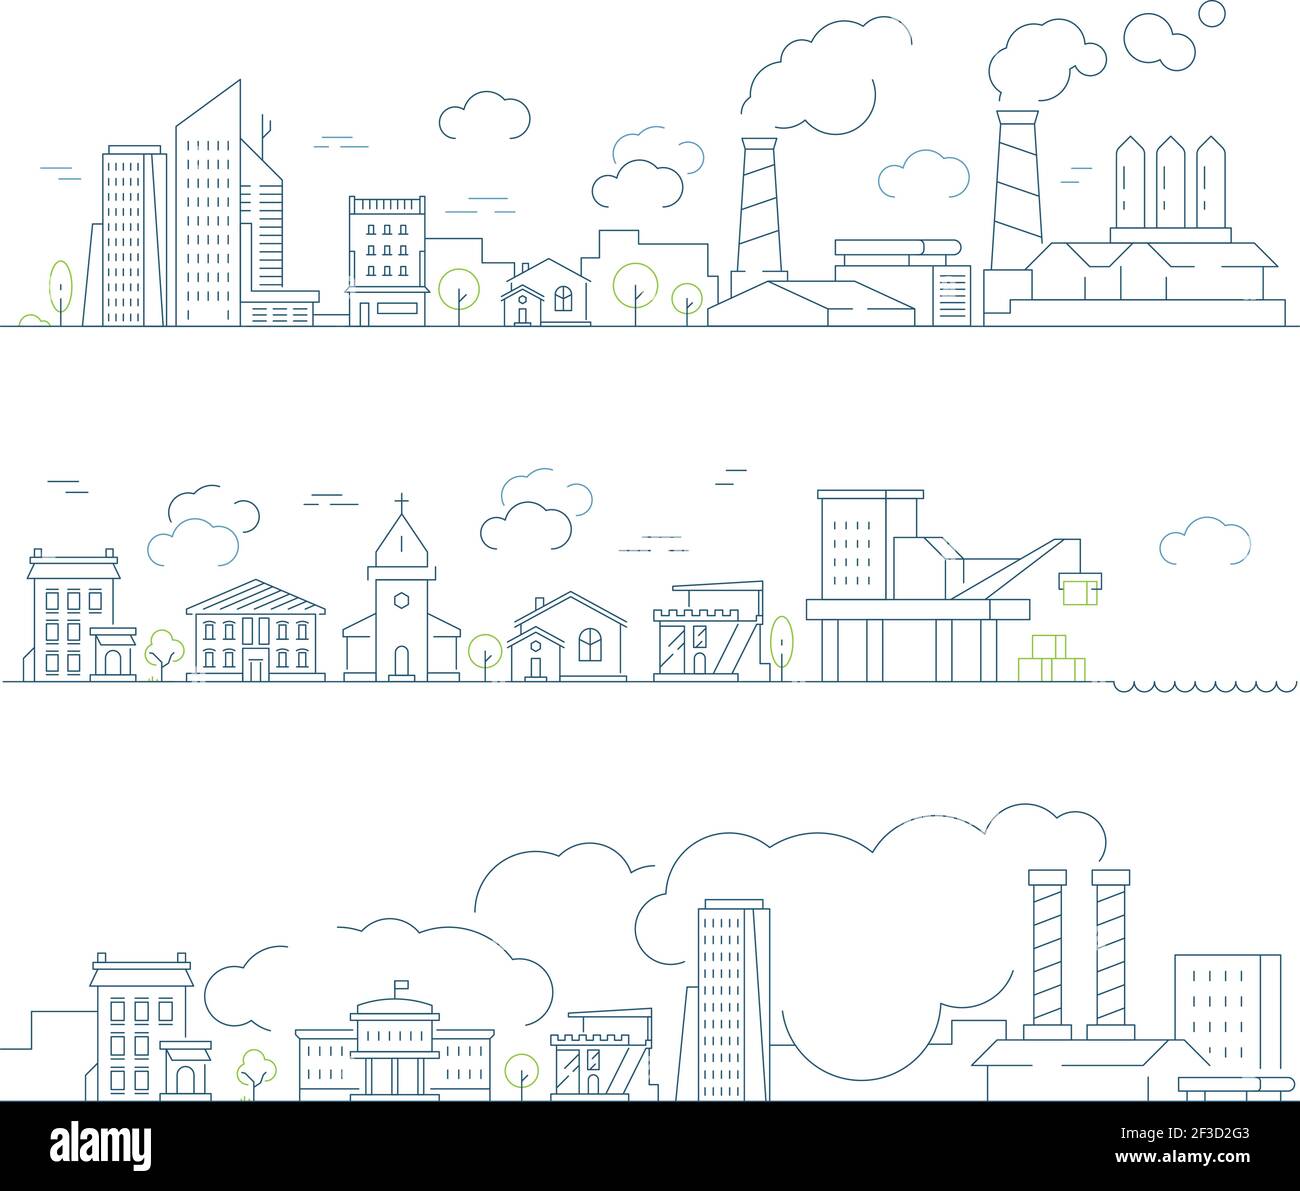 Industrielle Stadtlandschaft. Fabrik städtischen Smog Gebäude und Dampf Wolken transportieren schlechte Umwelt Vektor linearen Hintergrund Stock Vektor